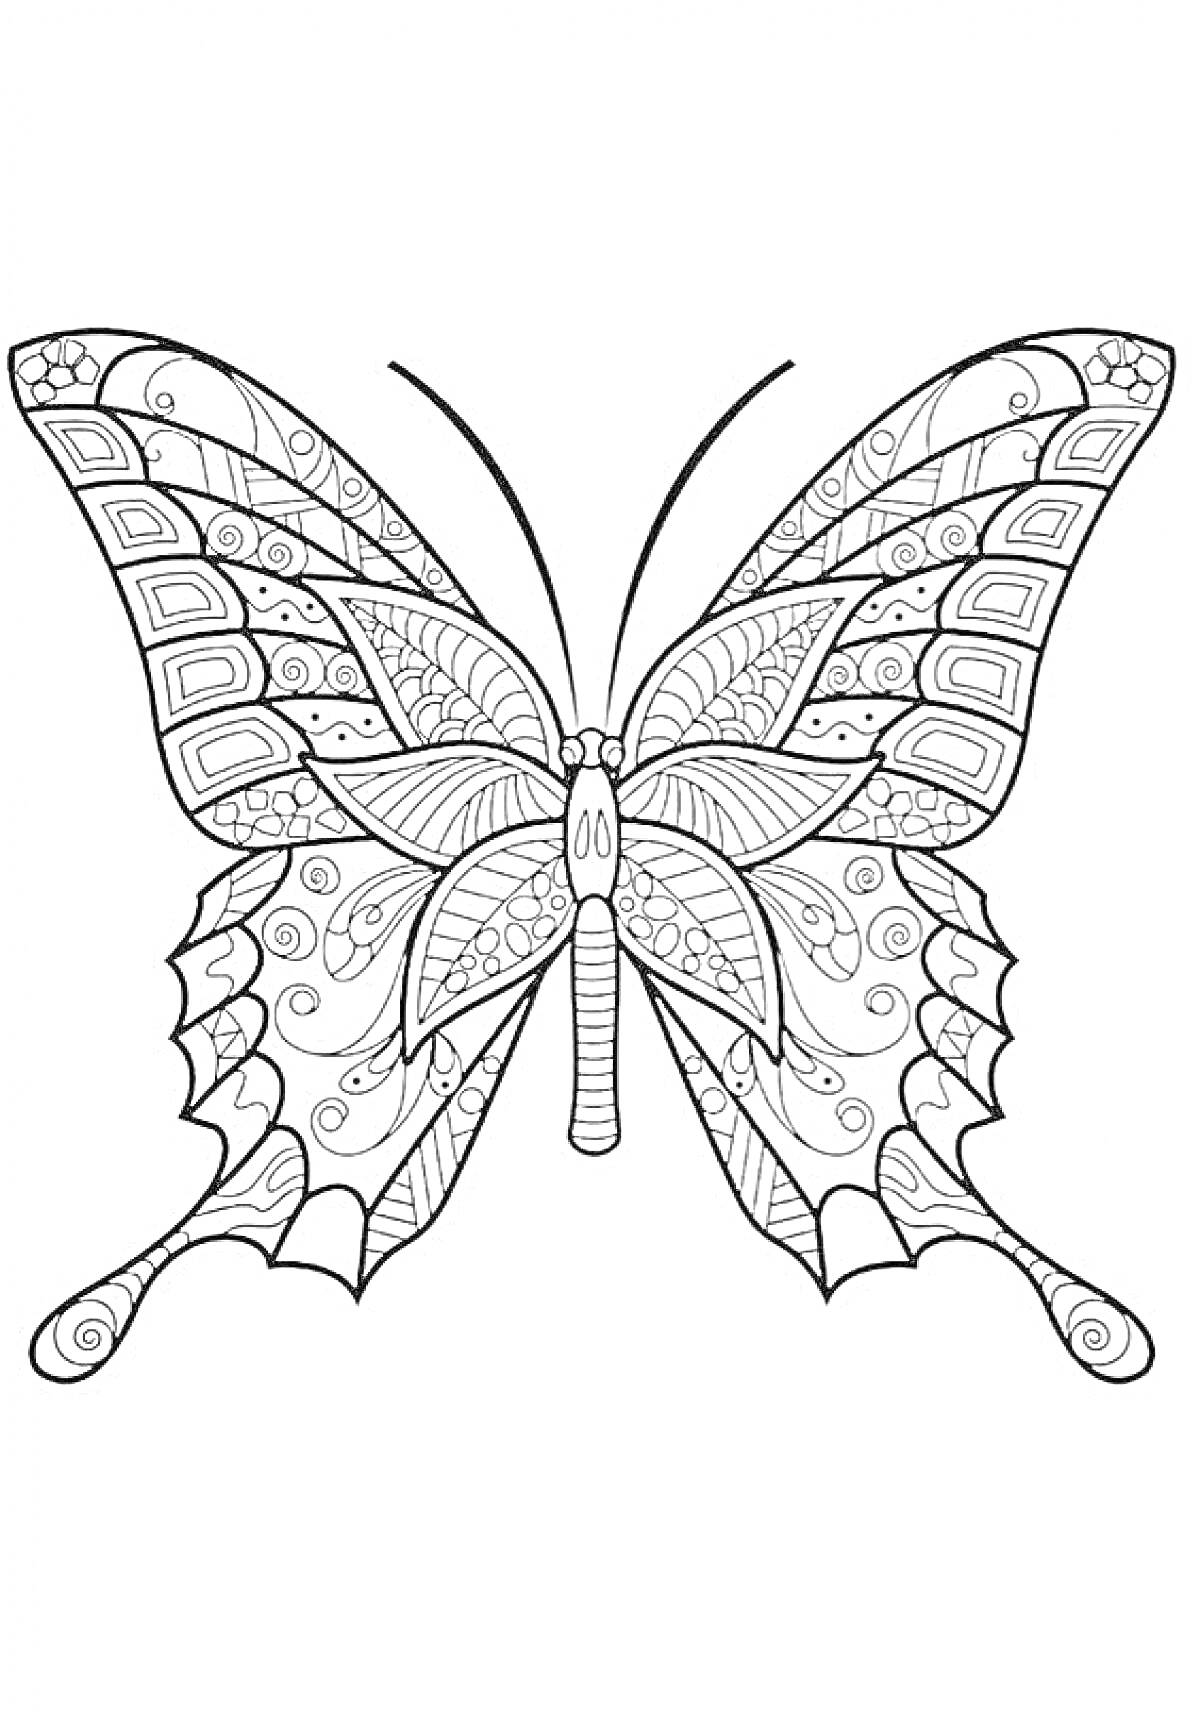 Раскраска бабочка с узорчатыми крыльями и сложными линиями